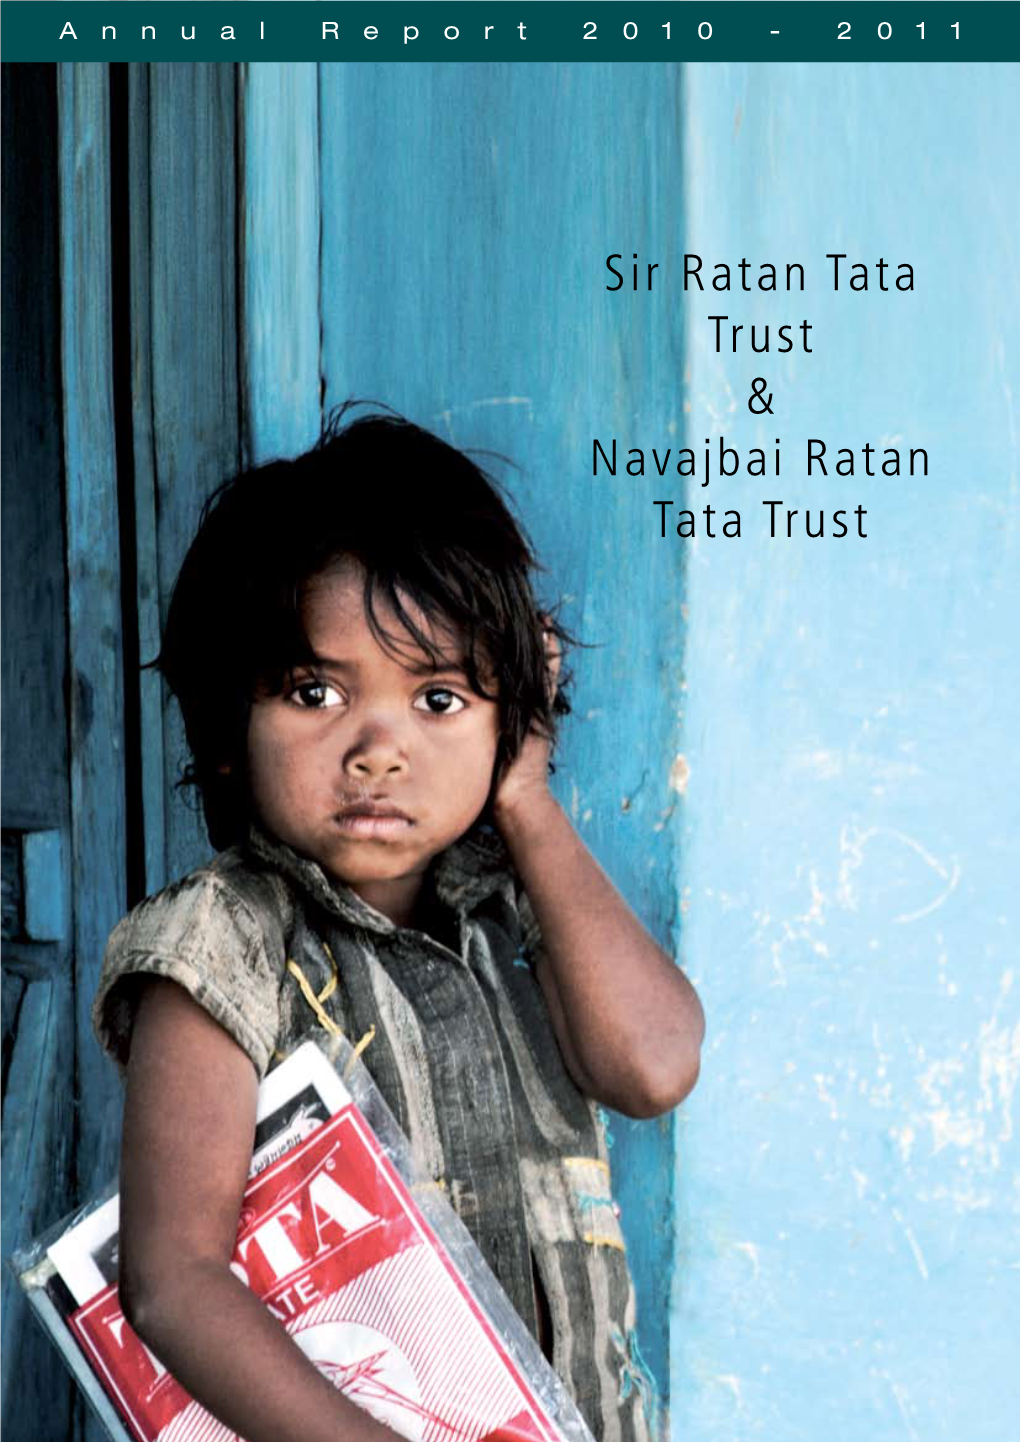 Sir Ratan Tata Trust & Navajbai Ratan Tata Trust